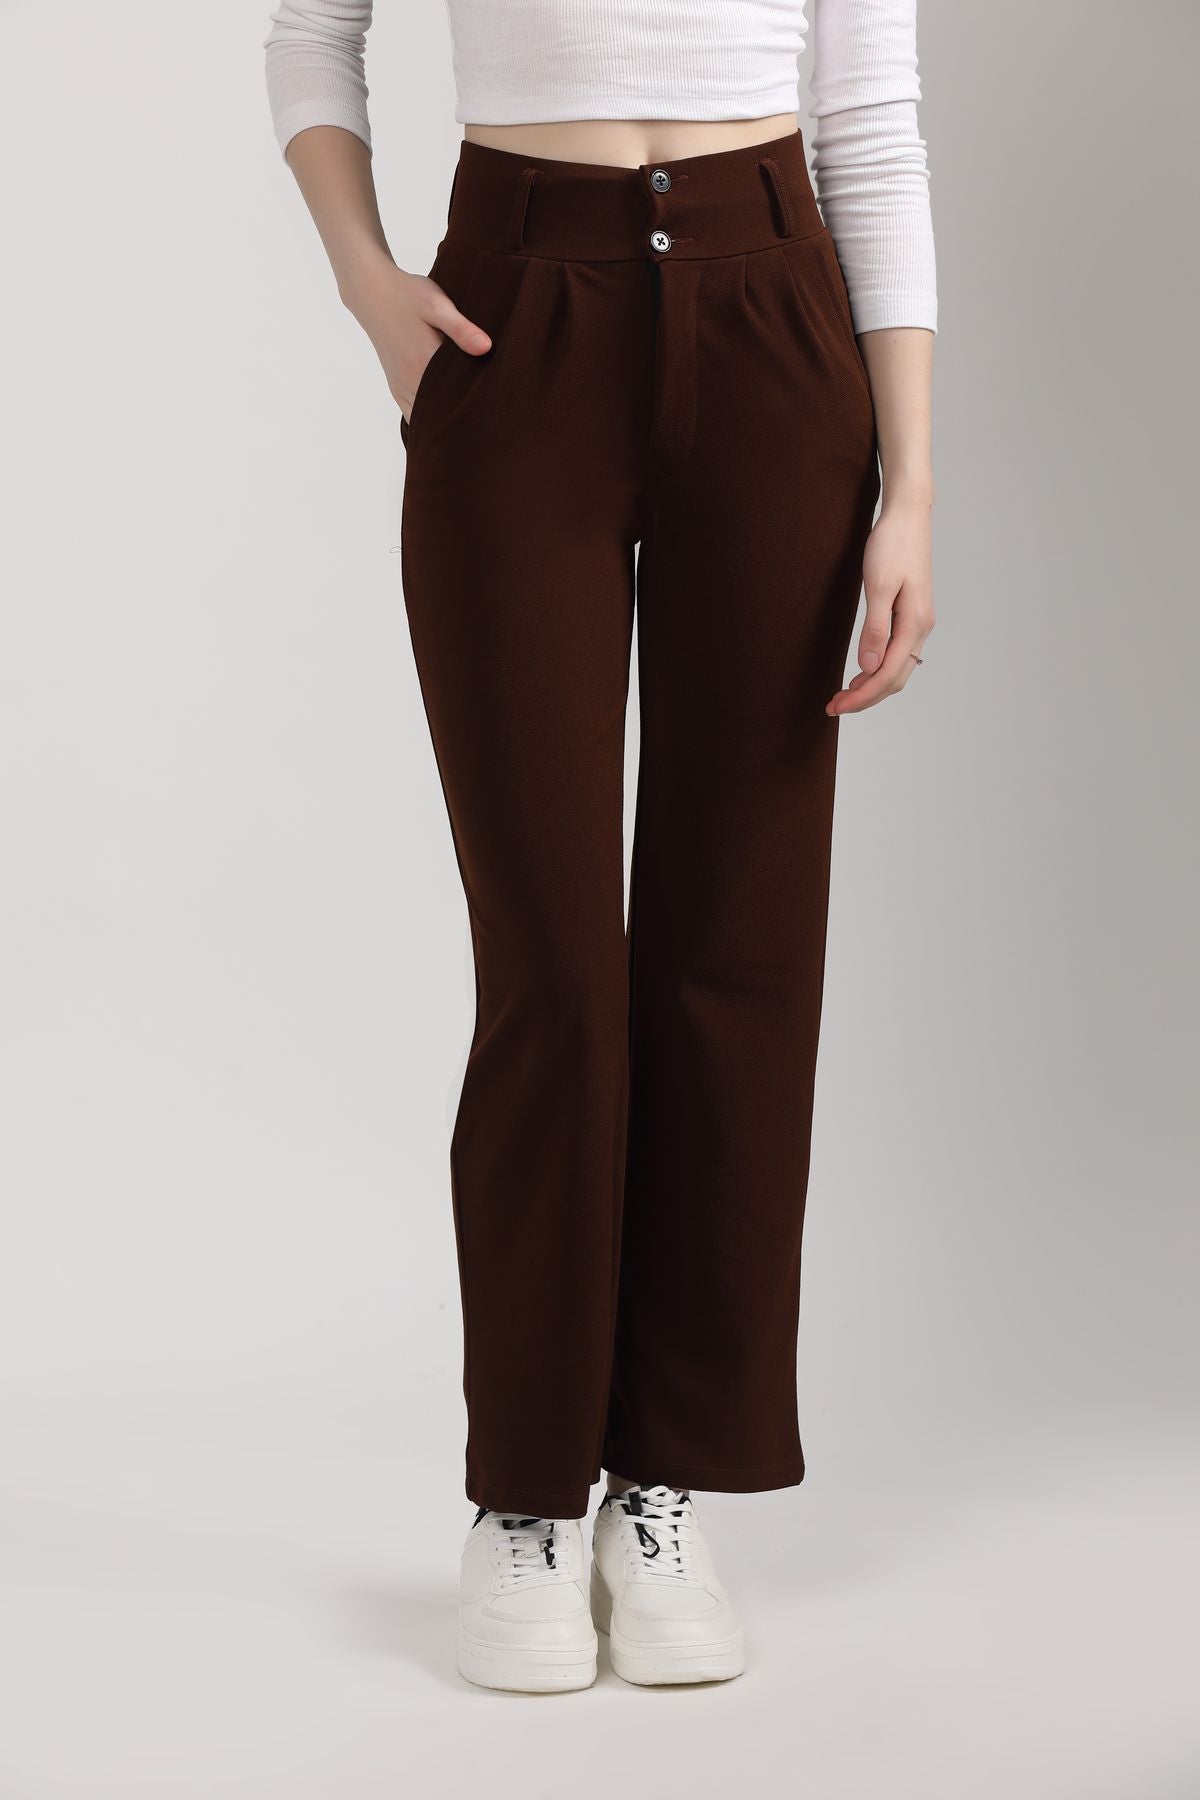 Women's Formal and Casual Korean Pants- Brown